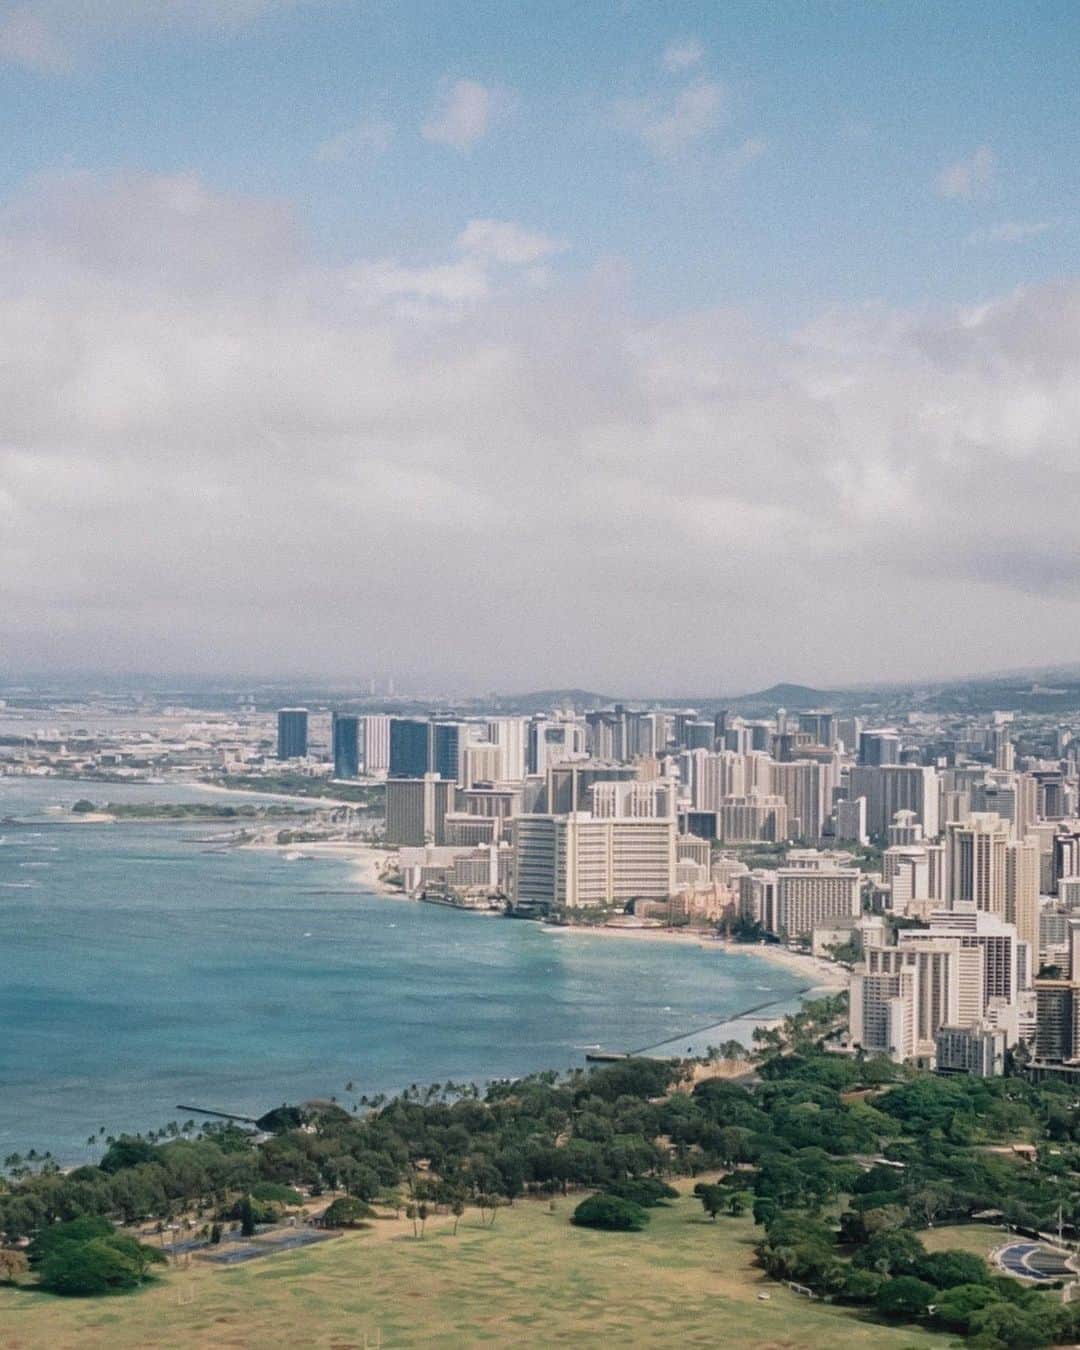 tammychannnのインスタグラム：「ハワイアン航空 @hawaiianairlinesjp による 「#おまたせハワイ」プレゼントキャンペーンのお知らせ🪷  日本からの旅行者の皆さんを、再びハワイへお迎えする プレゼント企画がスタートしました。  ▼キャンペーン期間 2023年3月10日〜3月14日まで  抽選の中から、200組400名の方に日本発ホノルル行き、エコノミークラス往復航空券のペアチケットをプレゼント。  更に、アウトリガー•リゾーツ&ホテルズのワイキキでの３泊分の宿泊券があたる可能性も。  応募の詳細は、ハワイアン航空　@hawaiianairlinesjp のオフィシャルHPをご覧ください。  ※ご予約は2023年3月31日まで。旅行期間： 2023 年 3 月 27 日～ 7 月 13 日（この日までにご旅行を終了のこと。予約対象外出発日の設定あり。)」